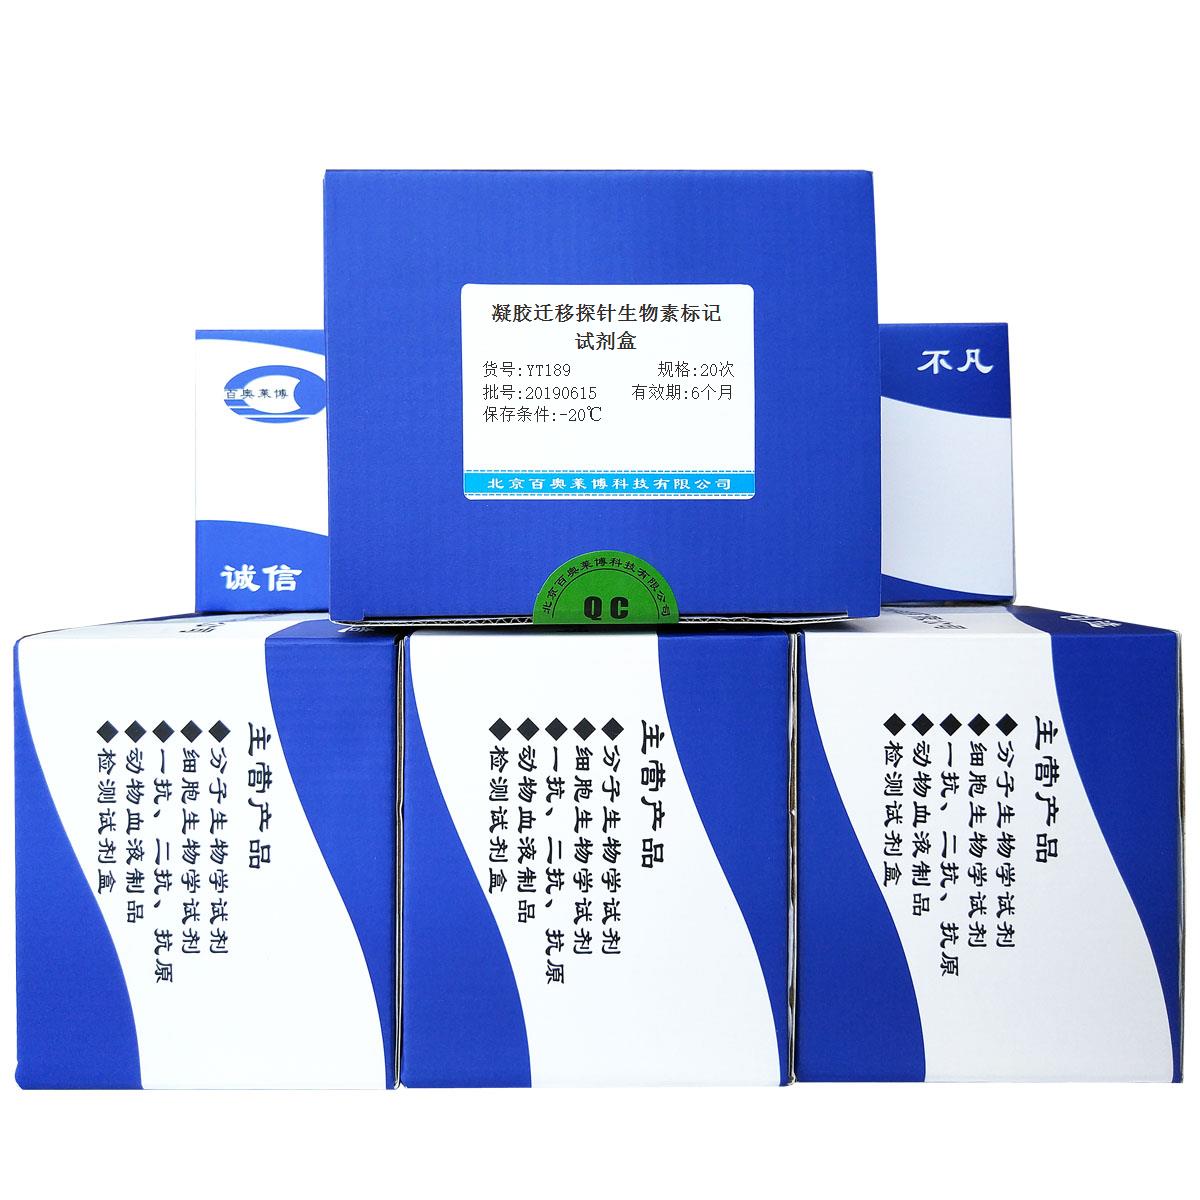 凝胶迁移探针生物素标记试剂盒北京现货